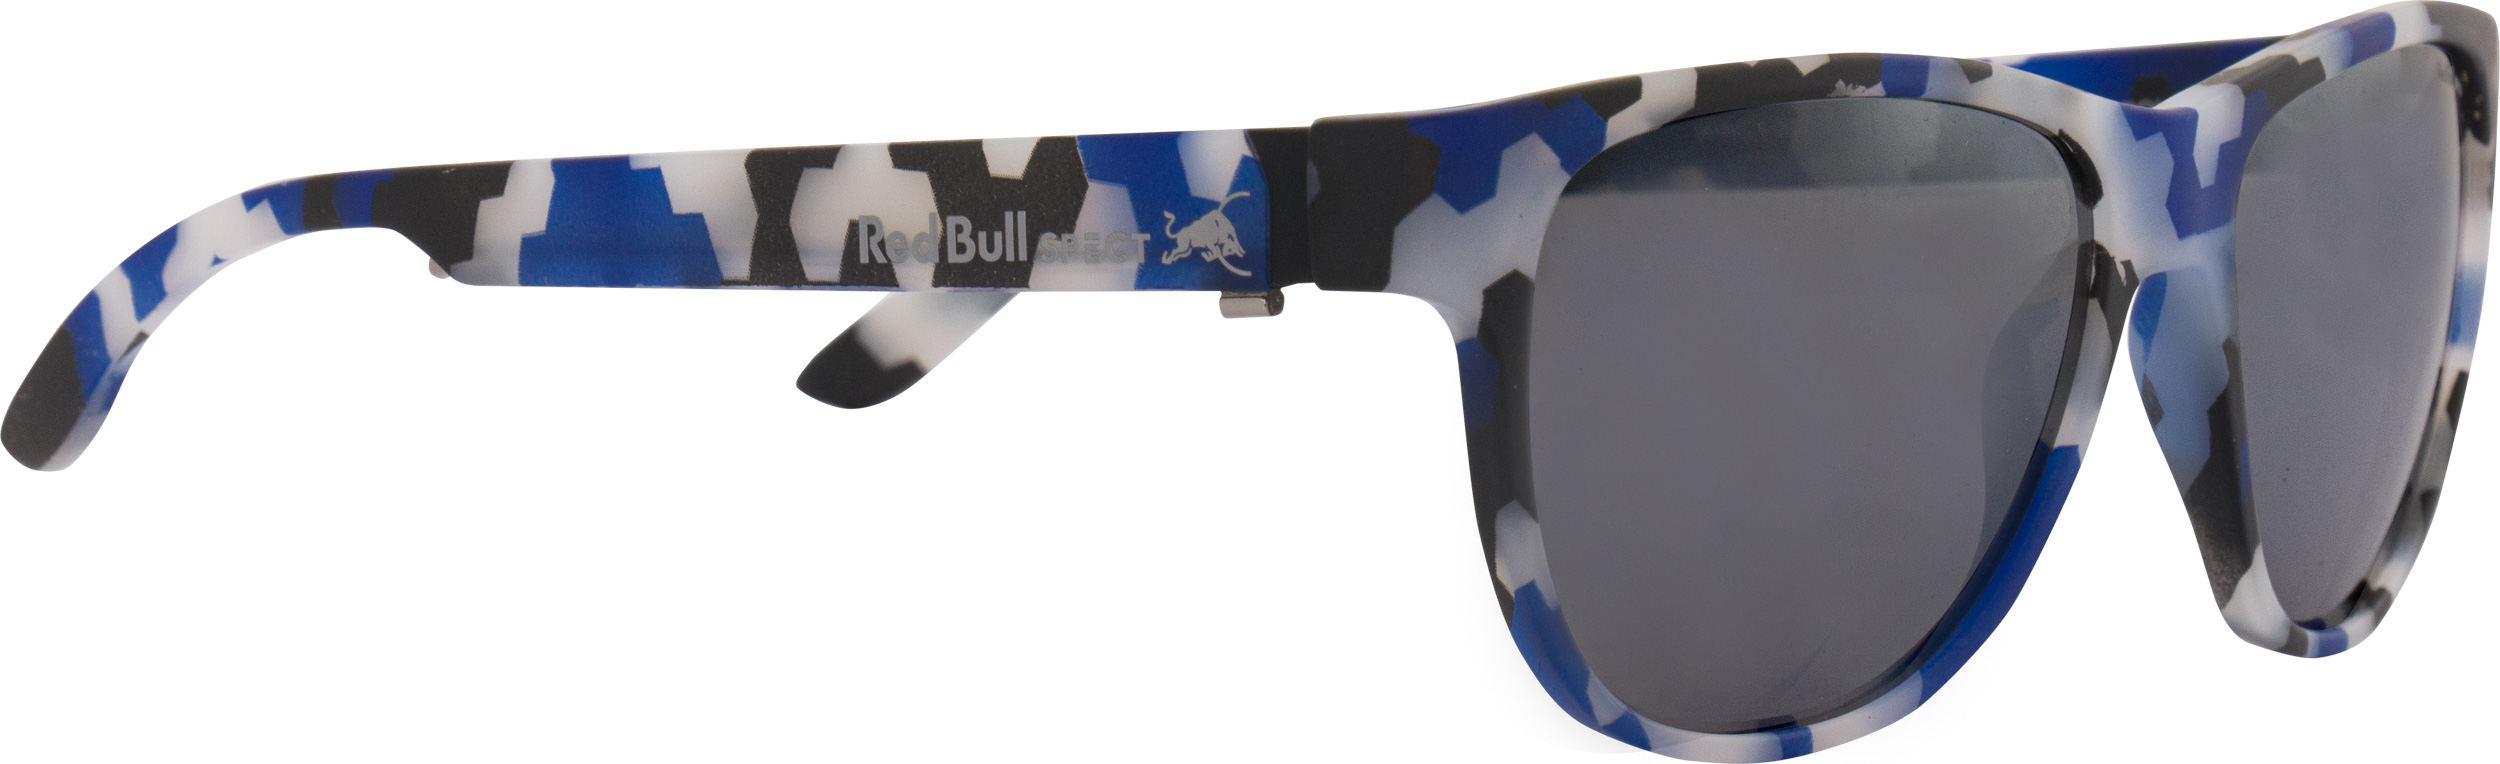 Sluneční brýle Red Bull Unisex Wing 3